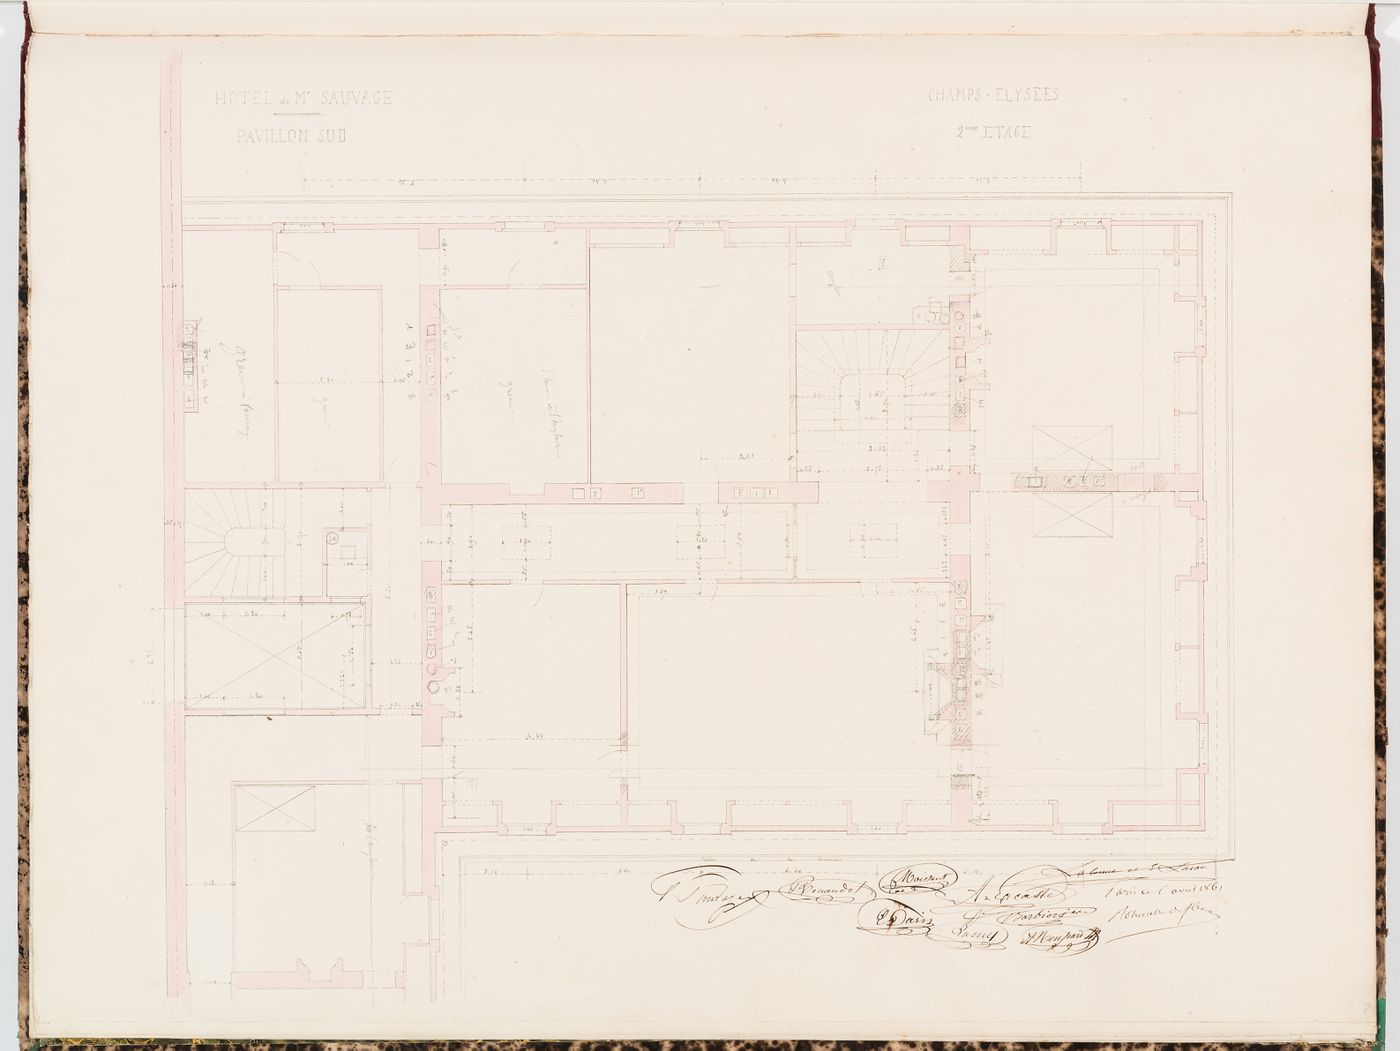 Second floor plan for the "pavillon sud", Hôtel Sauvage, Paris